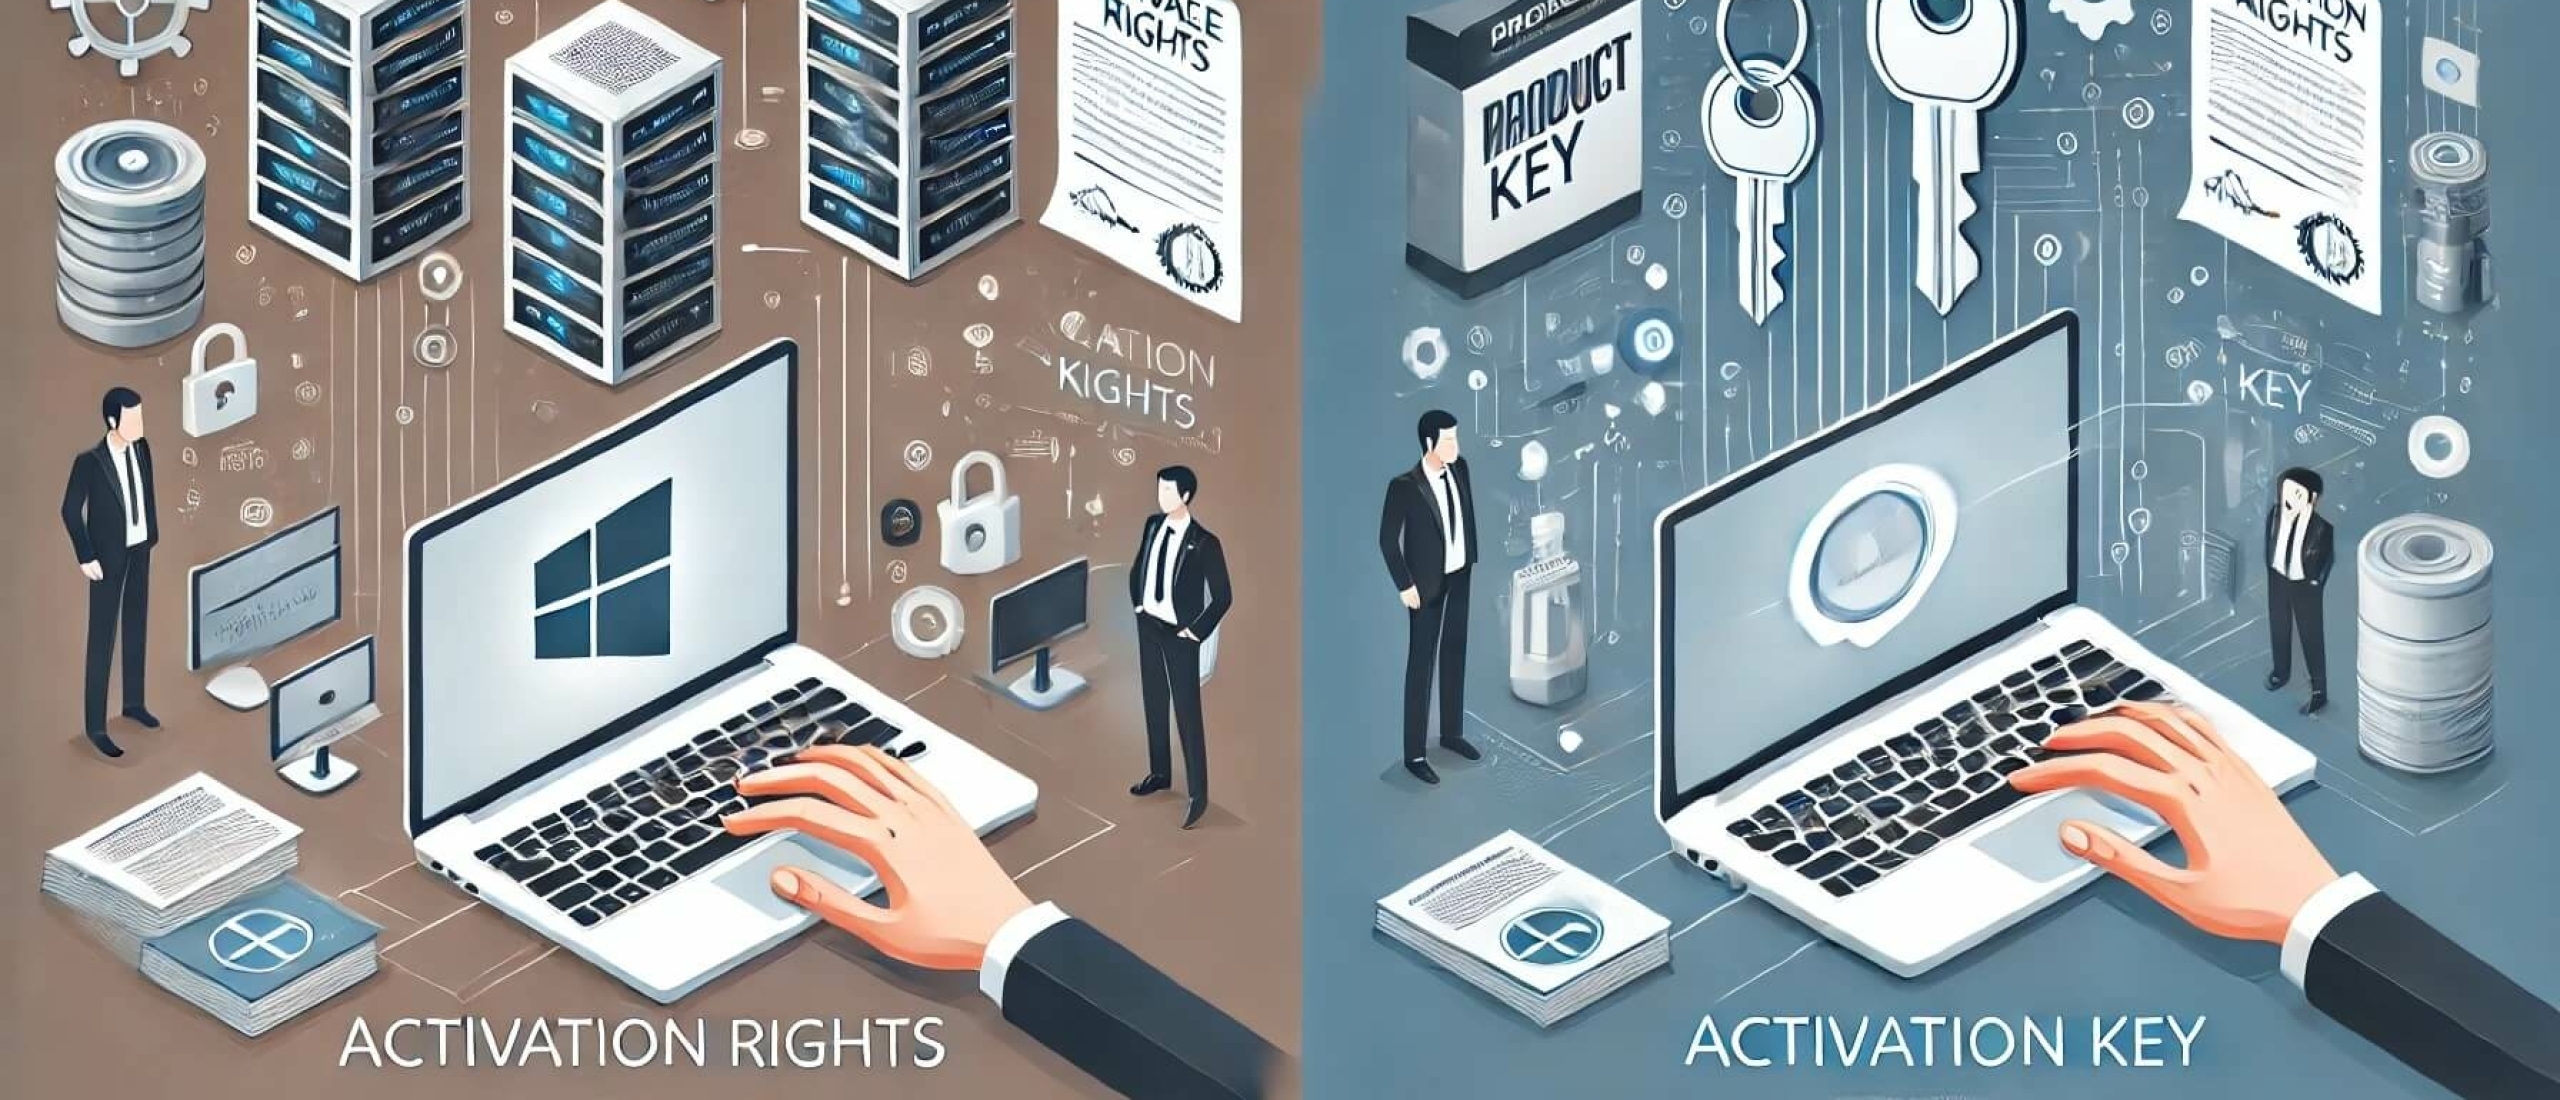 Aktivierungsrecht vs. Aktivierungsschlüssel